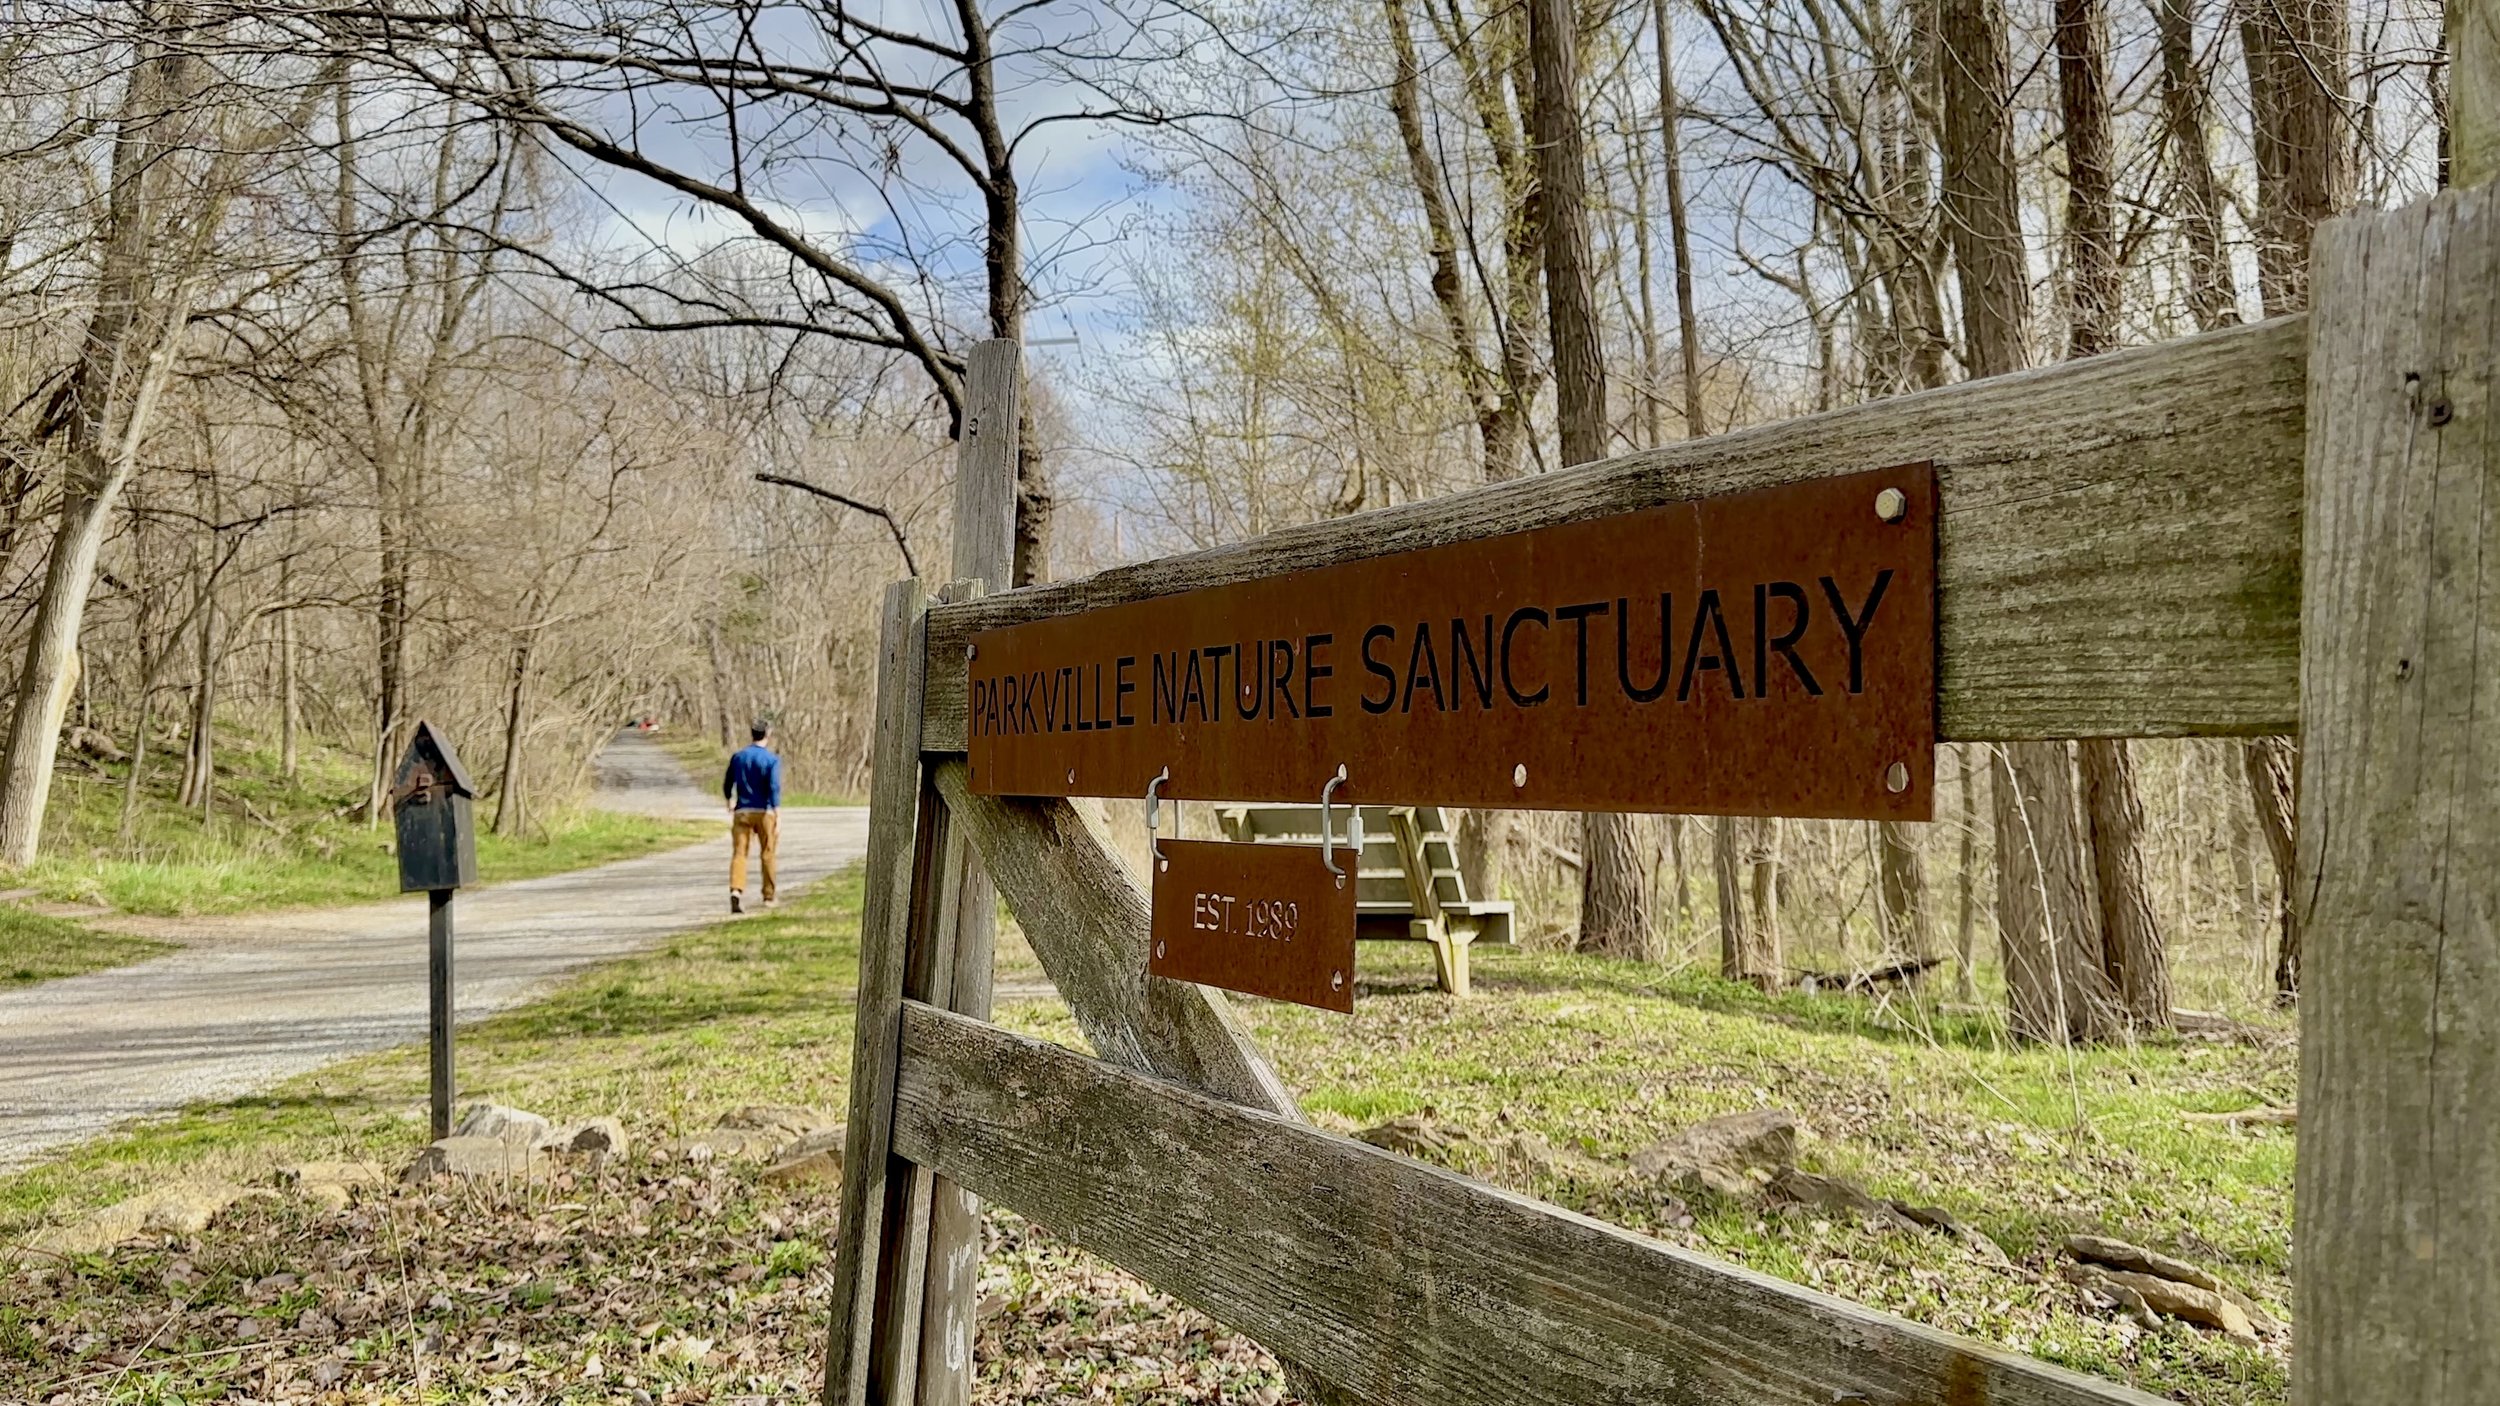 Parkville Nature Sanctuary